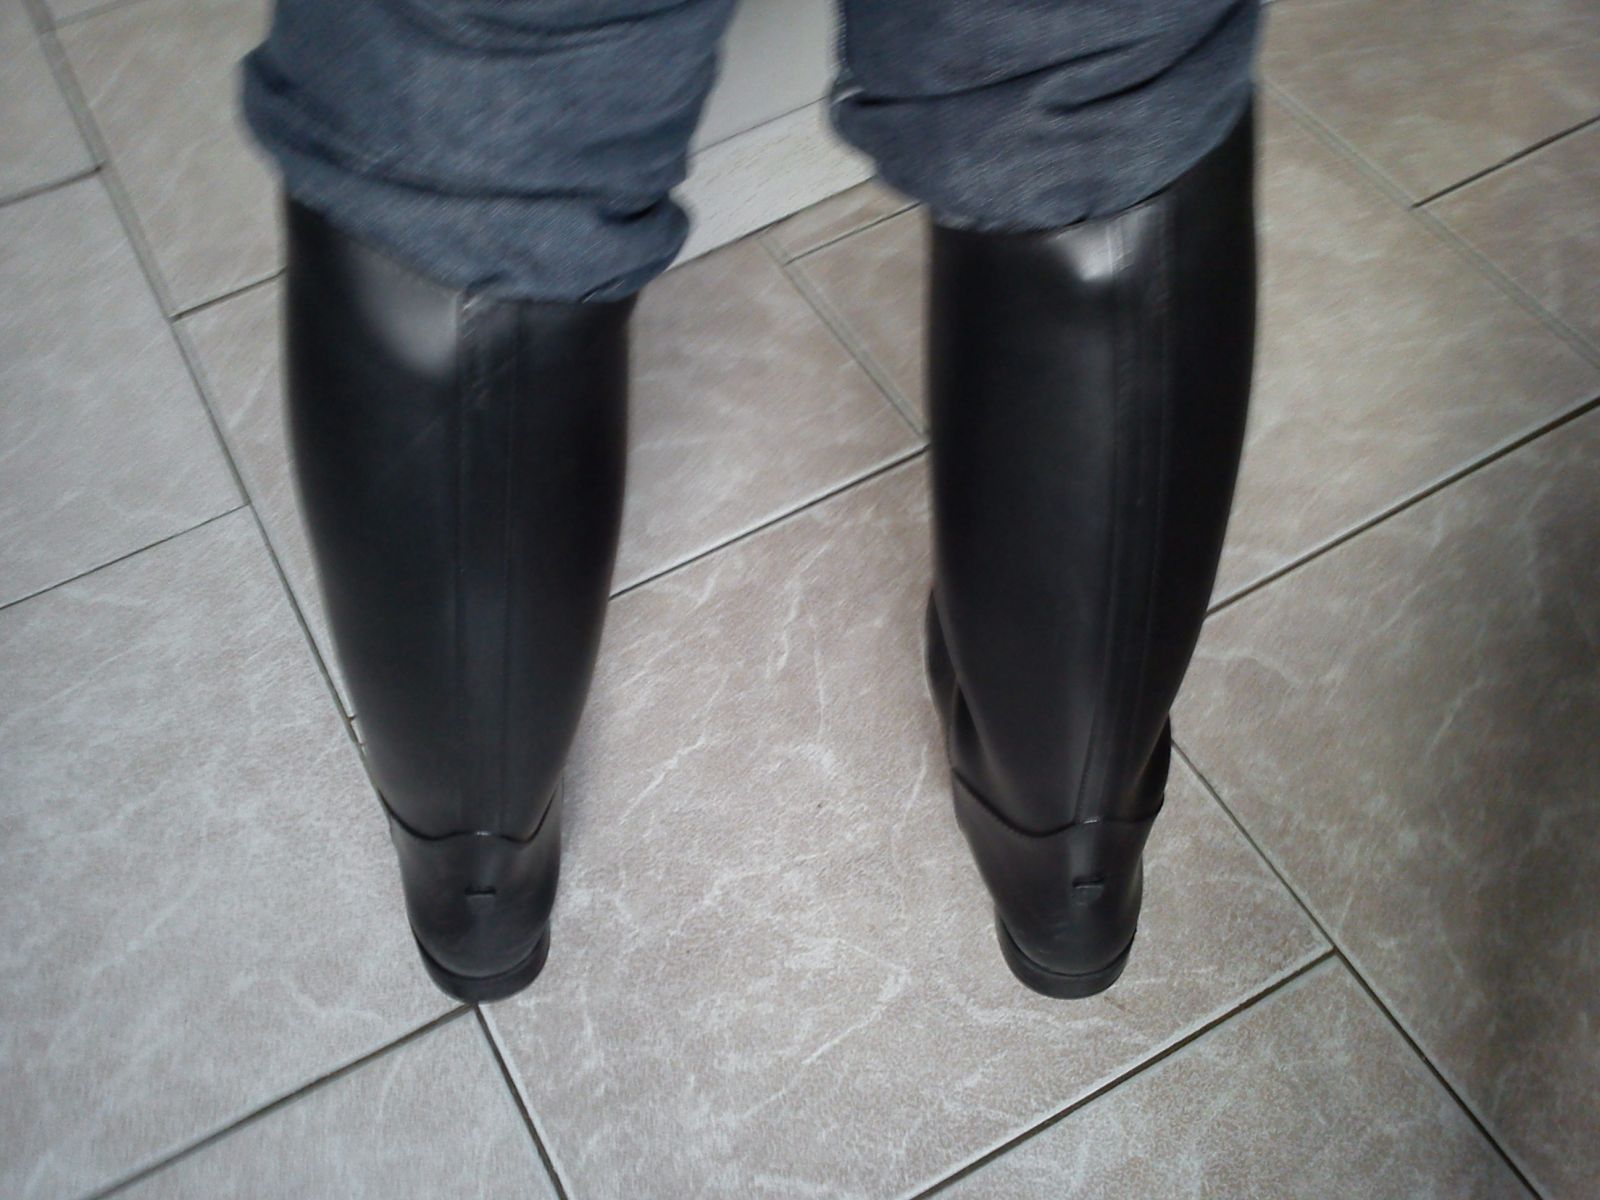 BECD 
2ème série de mes bottes équitation caoutchouc
Mots-clés: BECD bottes equitation caoutchouc rubber boot ridding